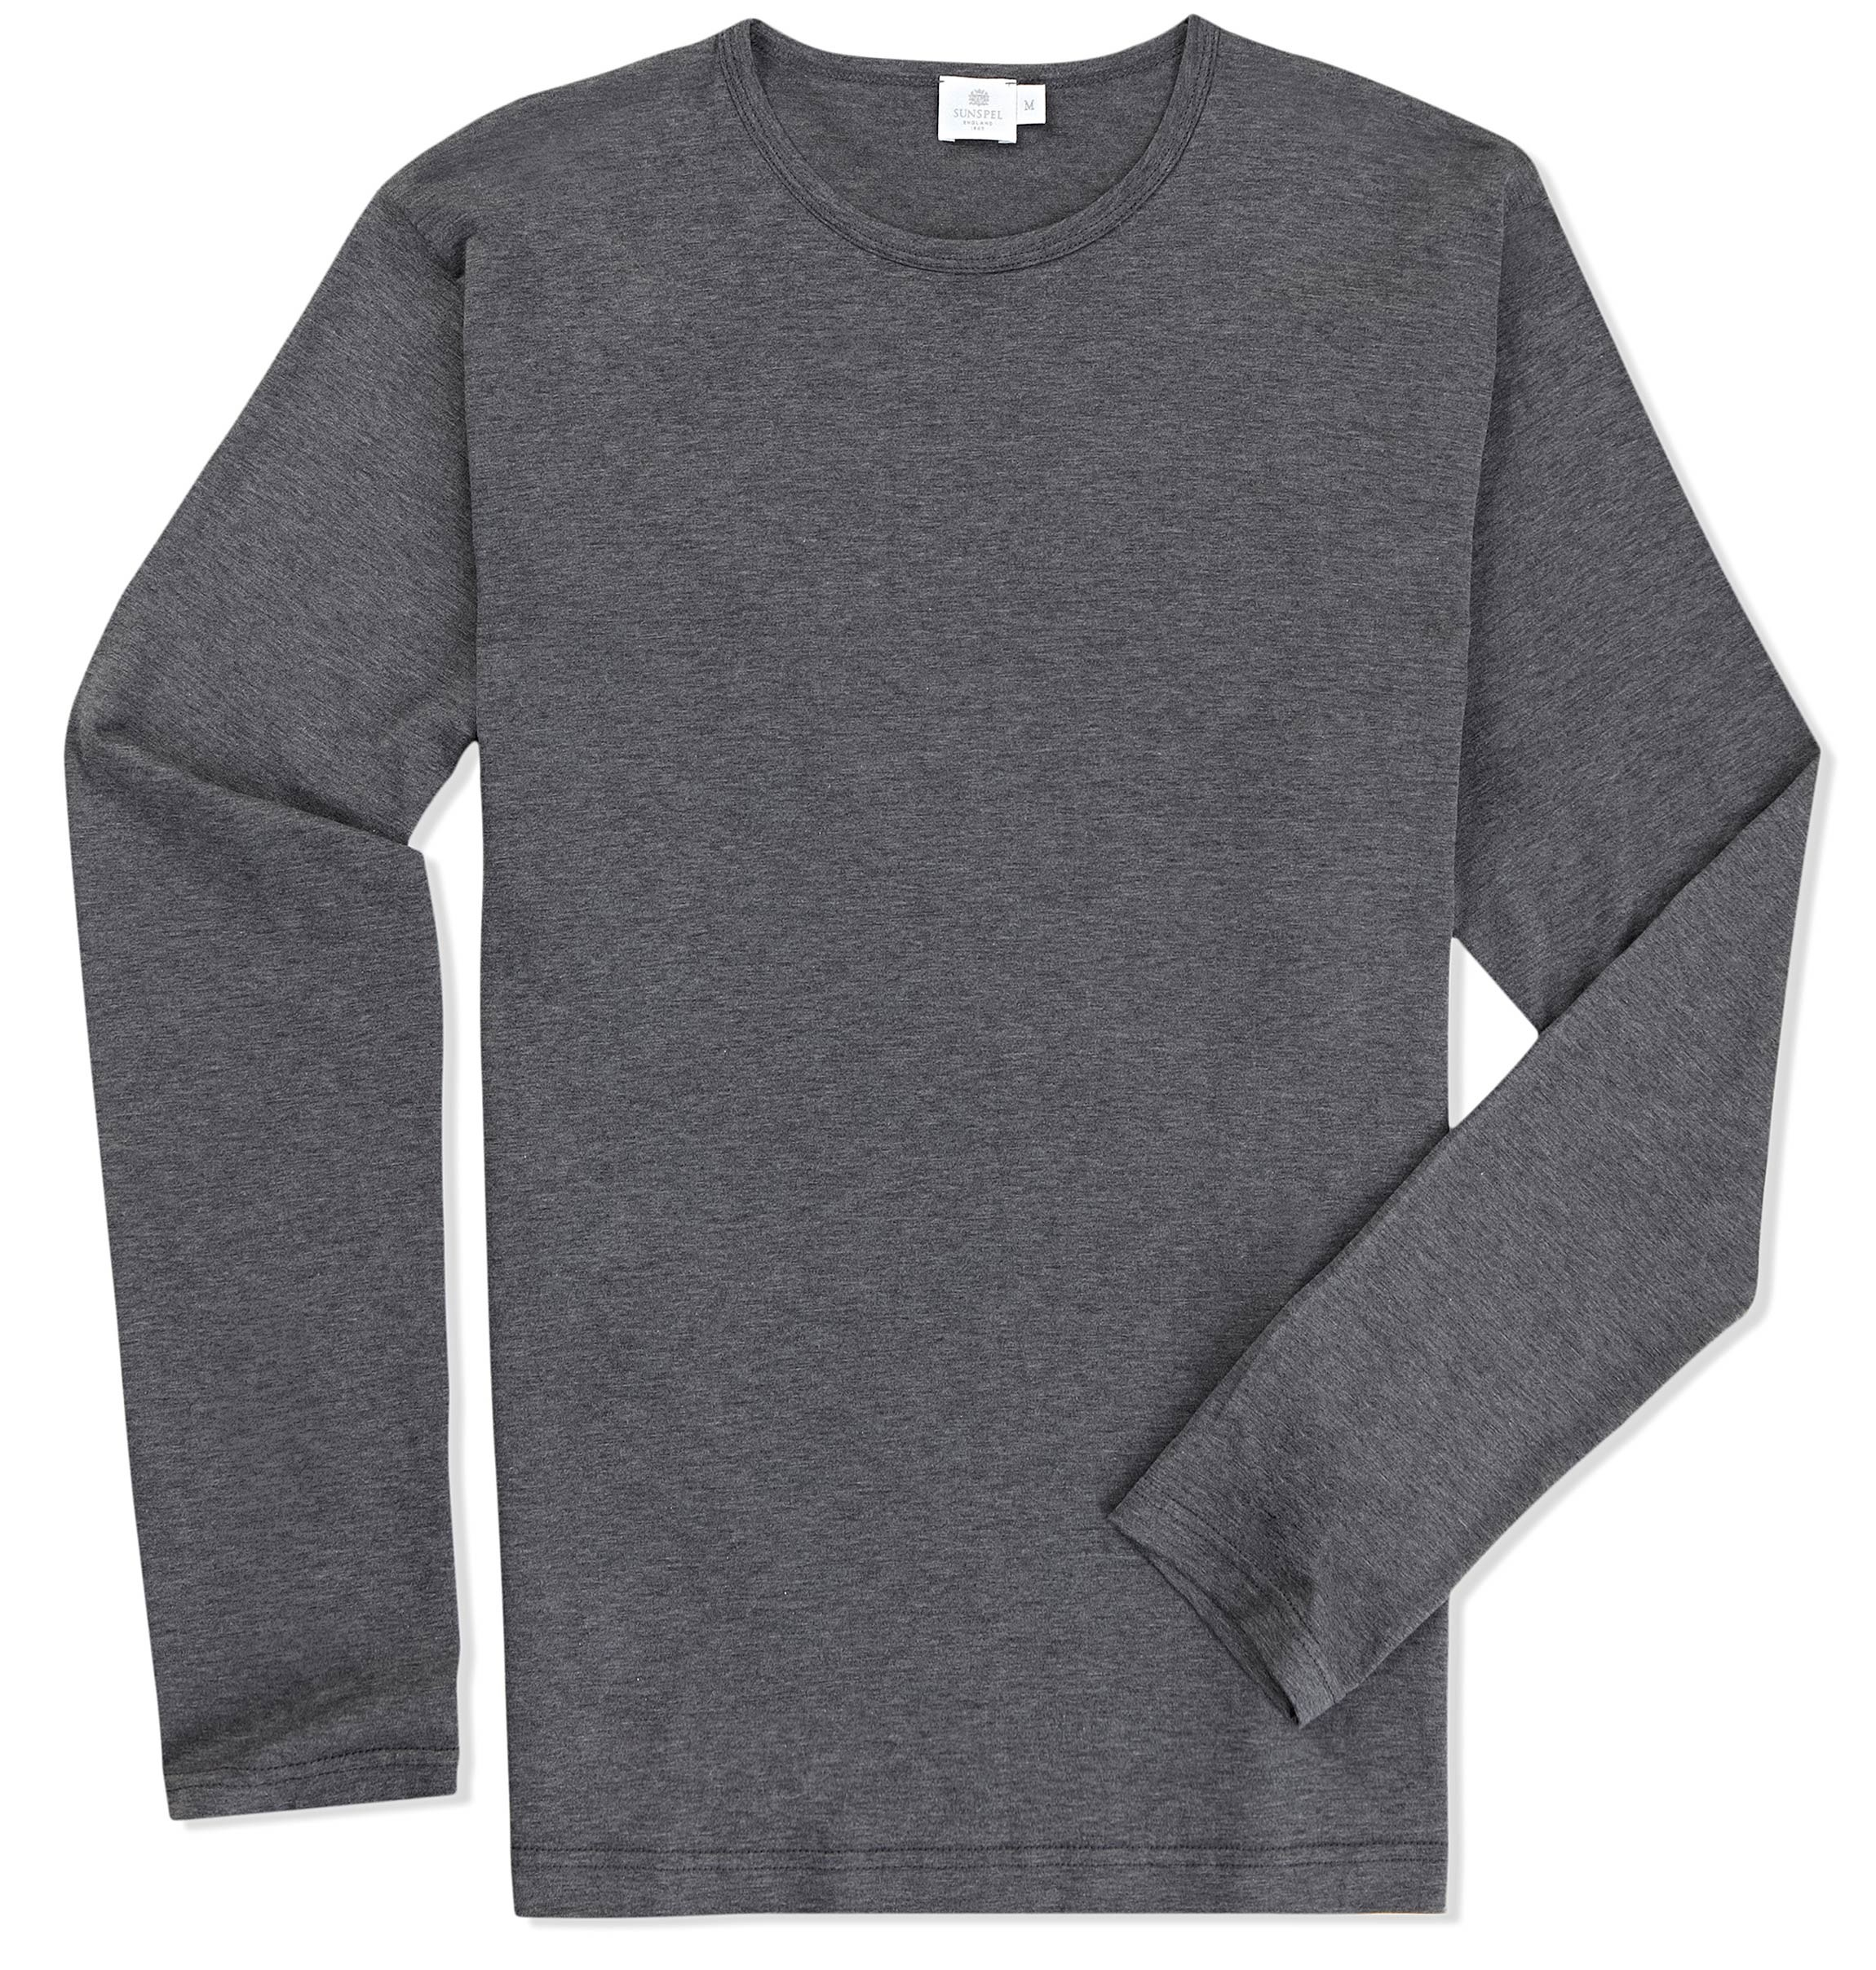 Lyst - Sunspel Long Sleeve Crew Neck T-shirt in Gray for Men